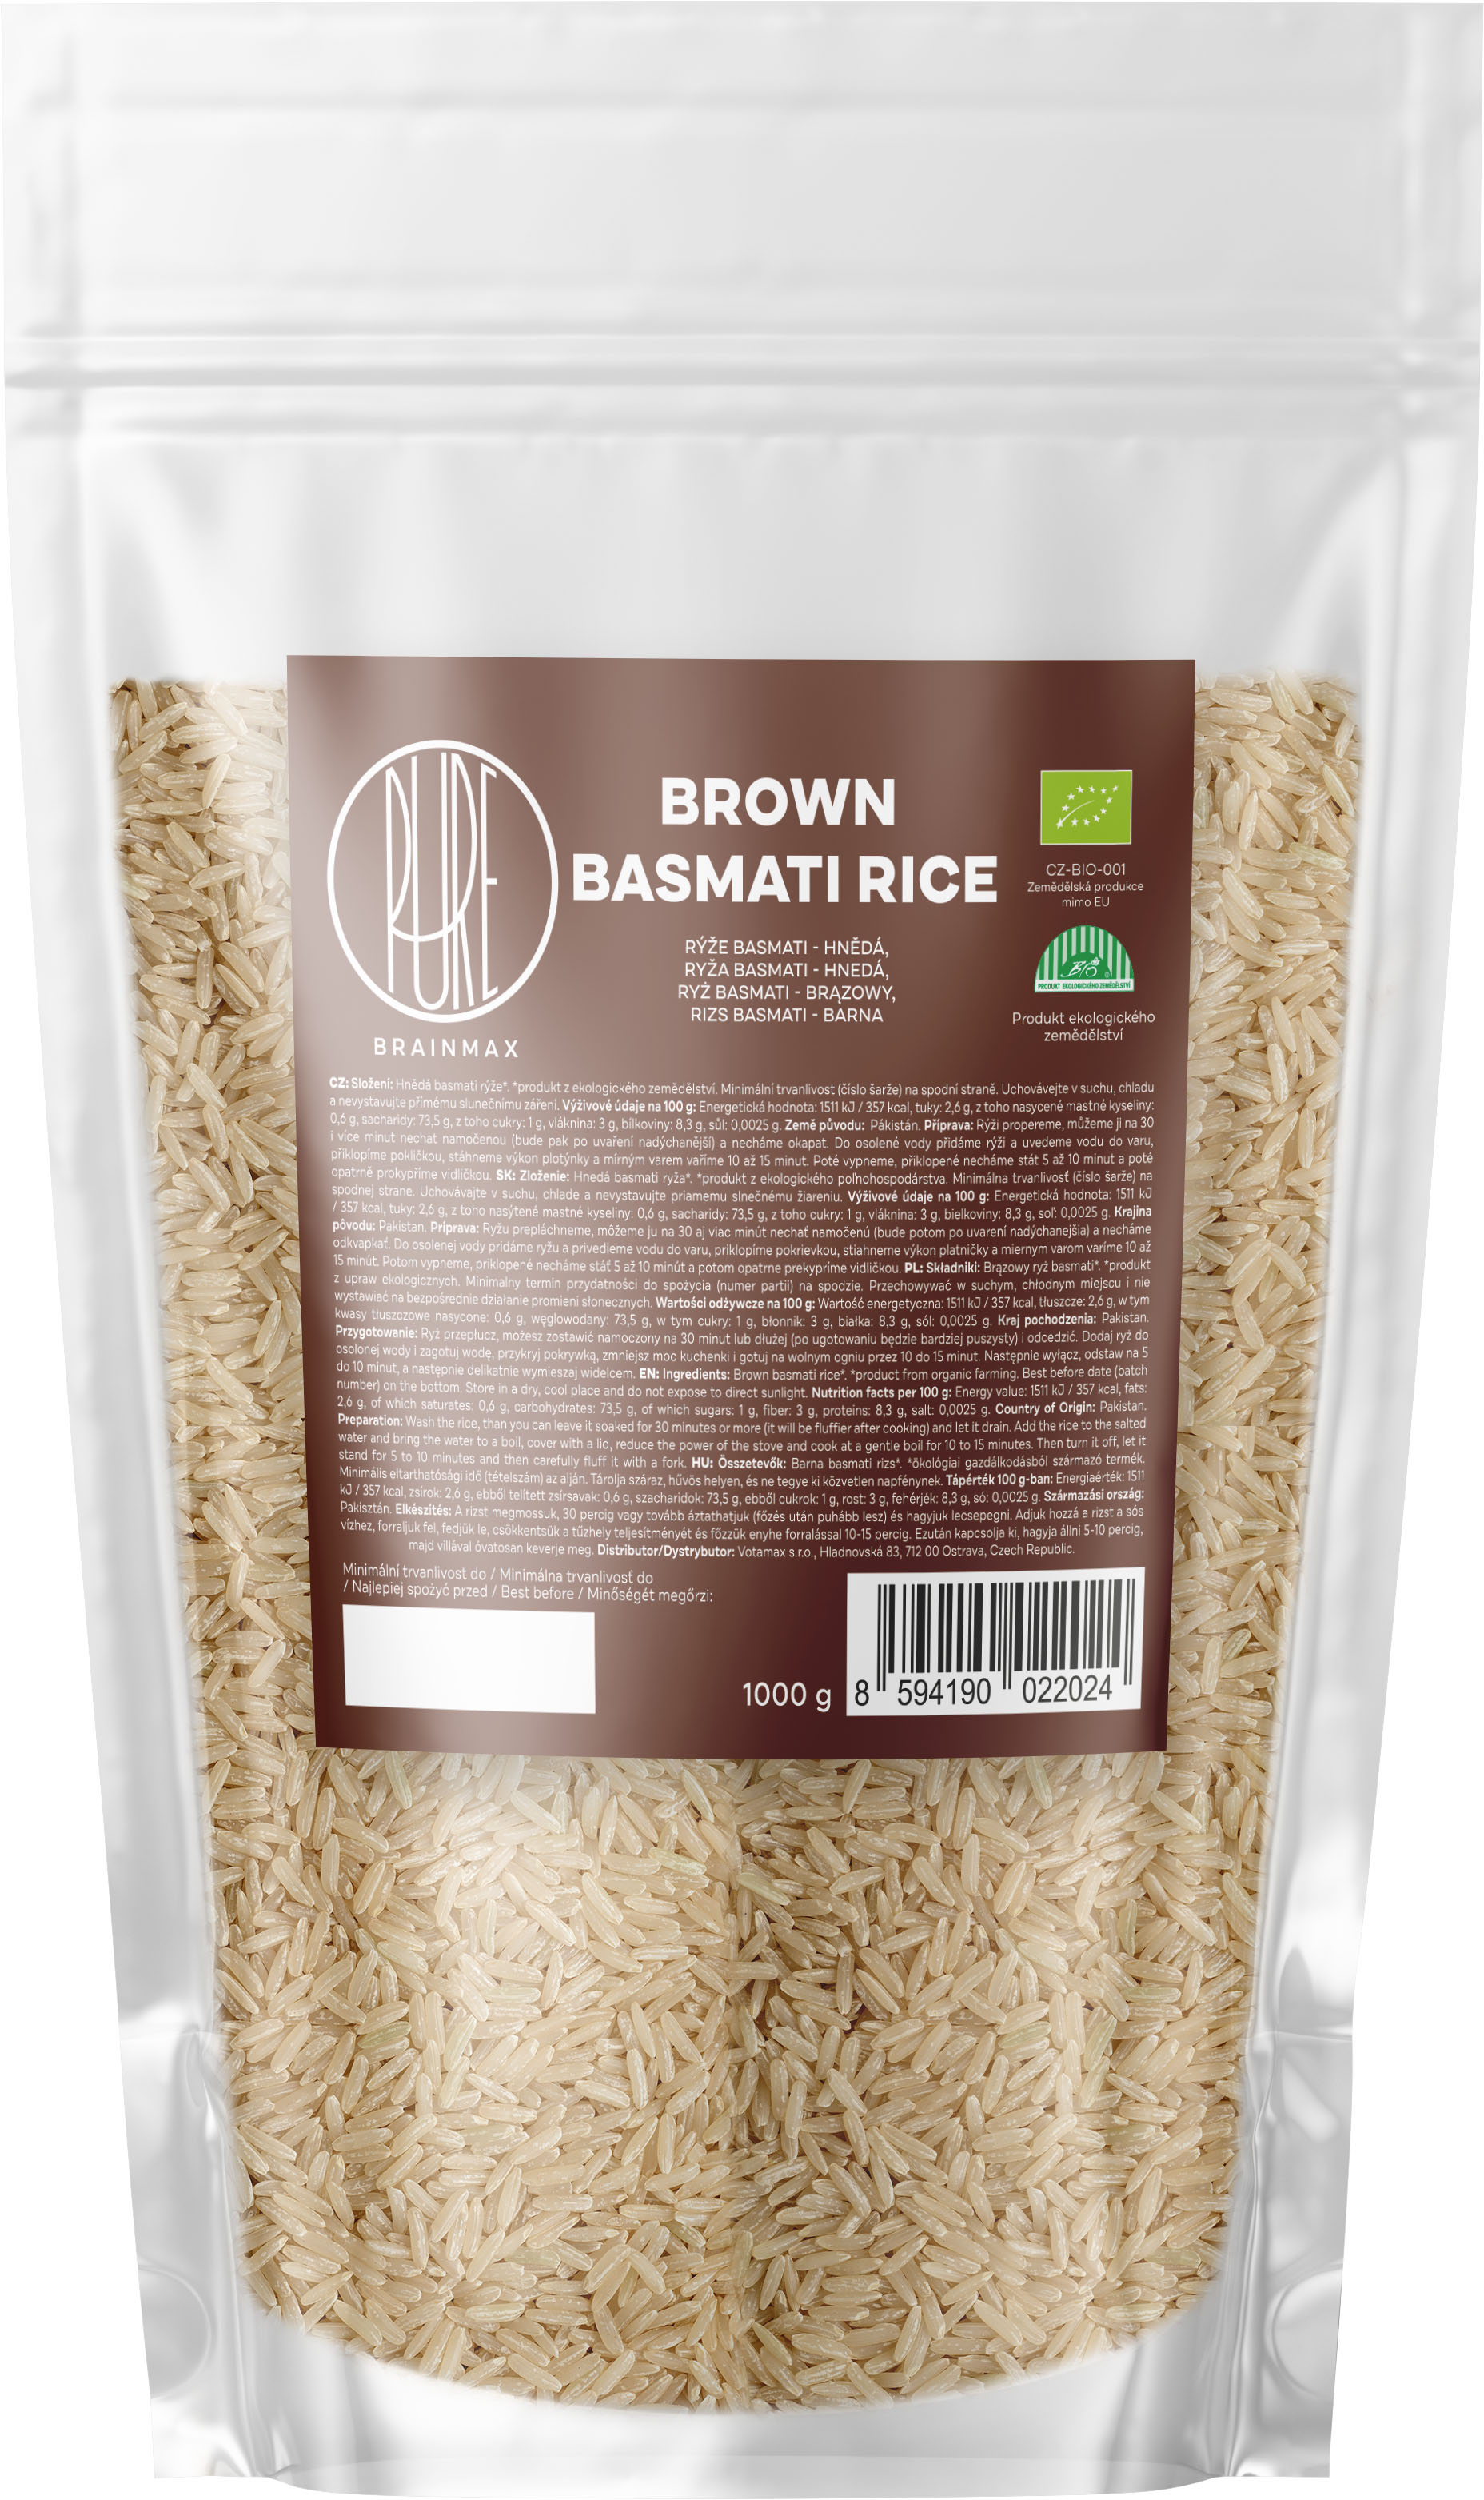 BrainMax Pure Rýže, hnědá, Basmati BIO, 1kg *CZ-BIO-001 certifikát